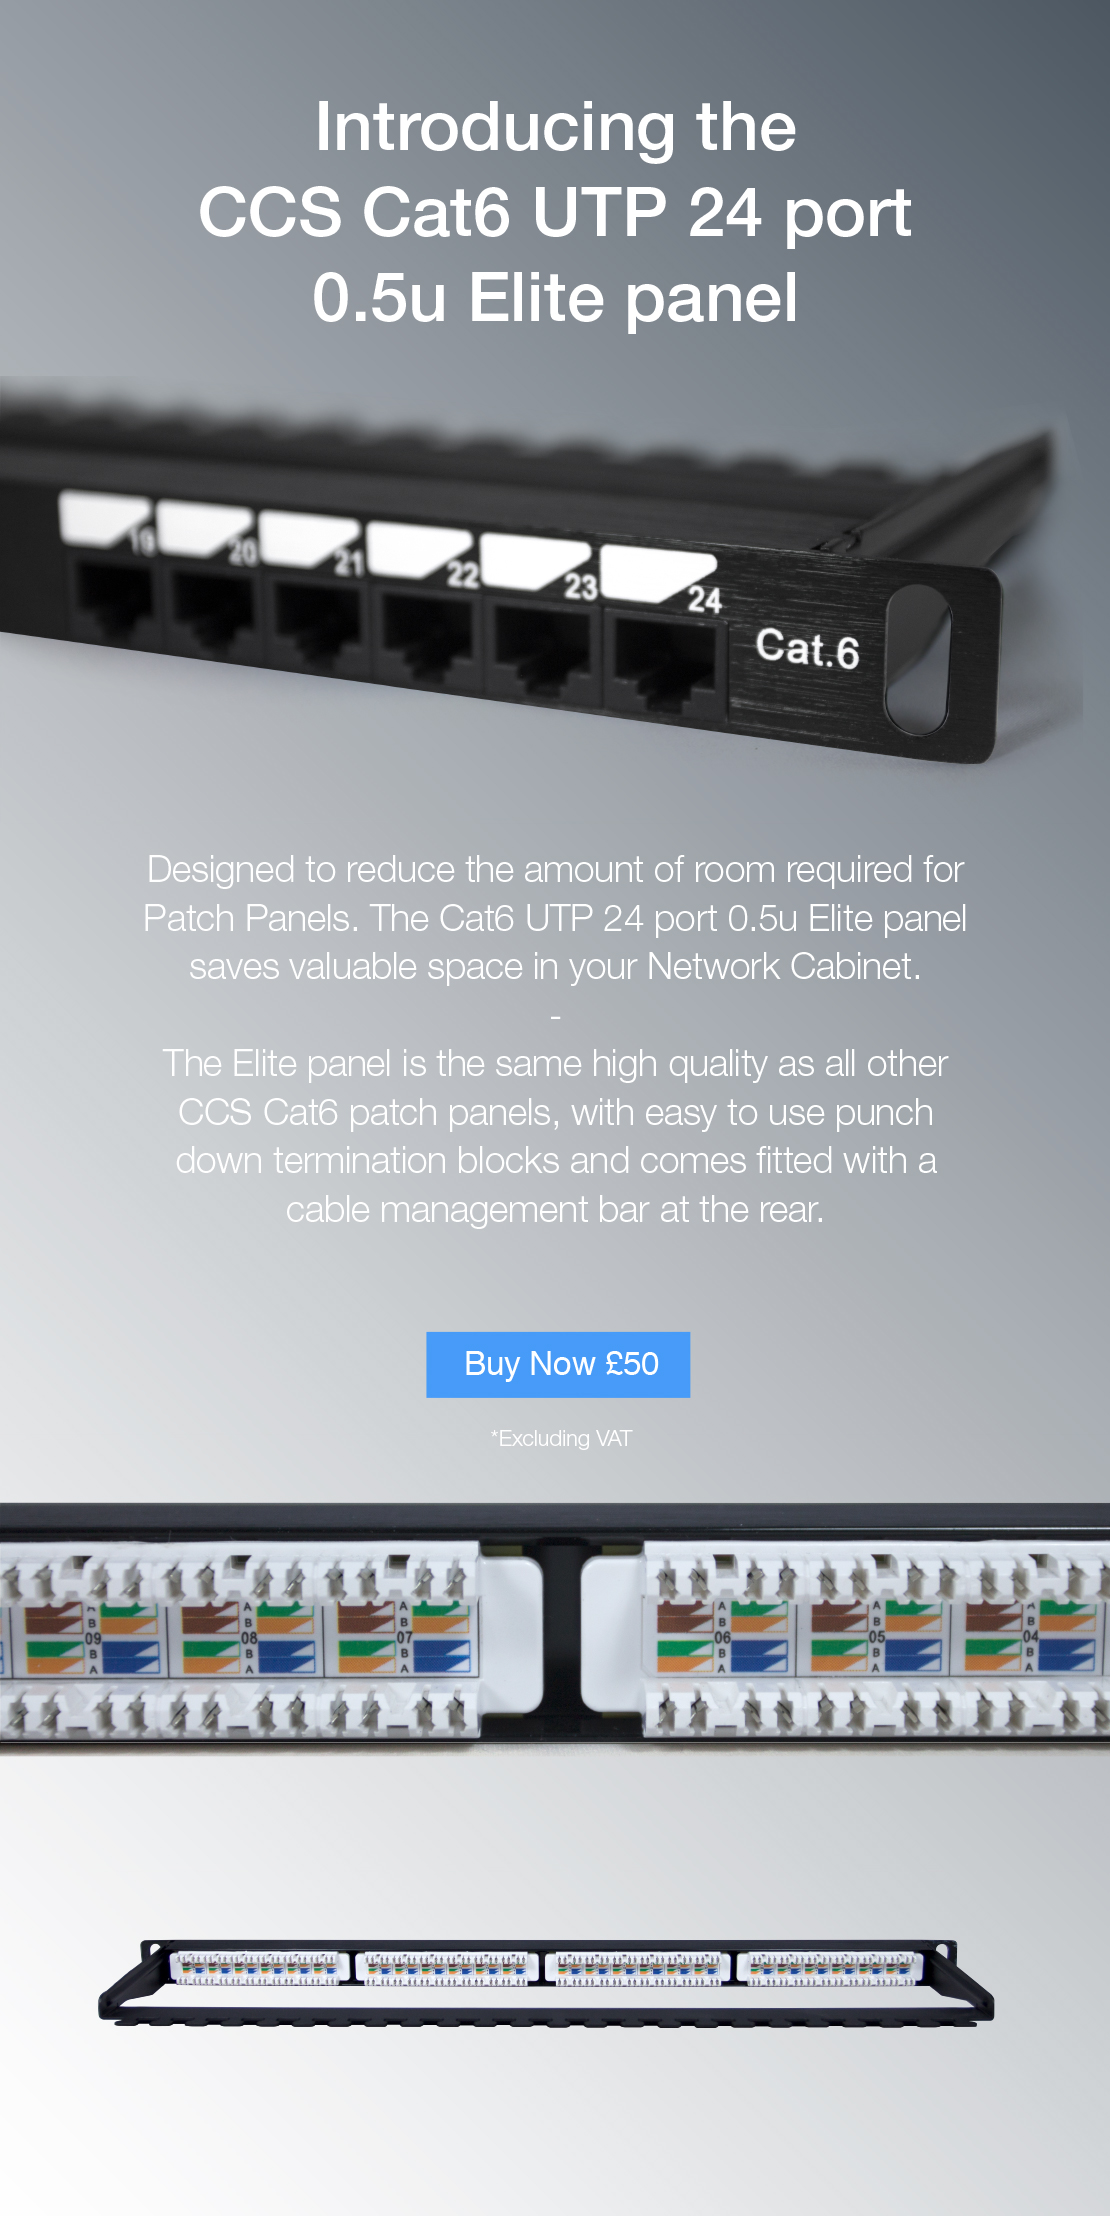 Introducing the CCS Cat6 UTP 24 Port 0.5u Elite Panel